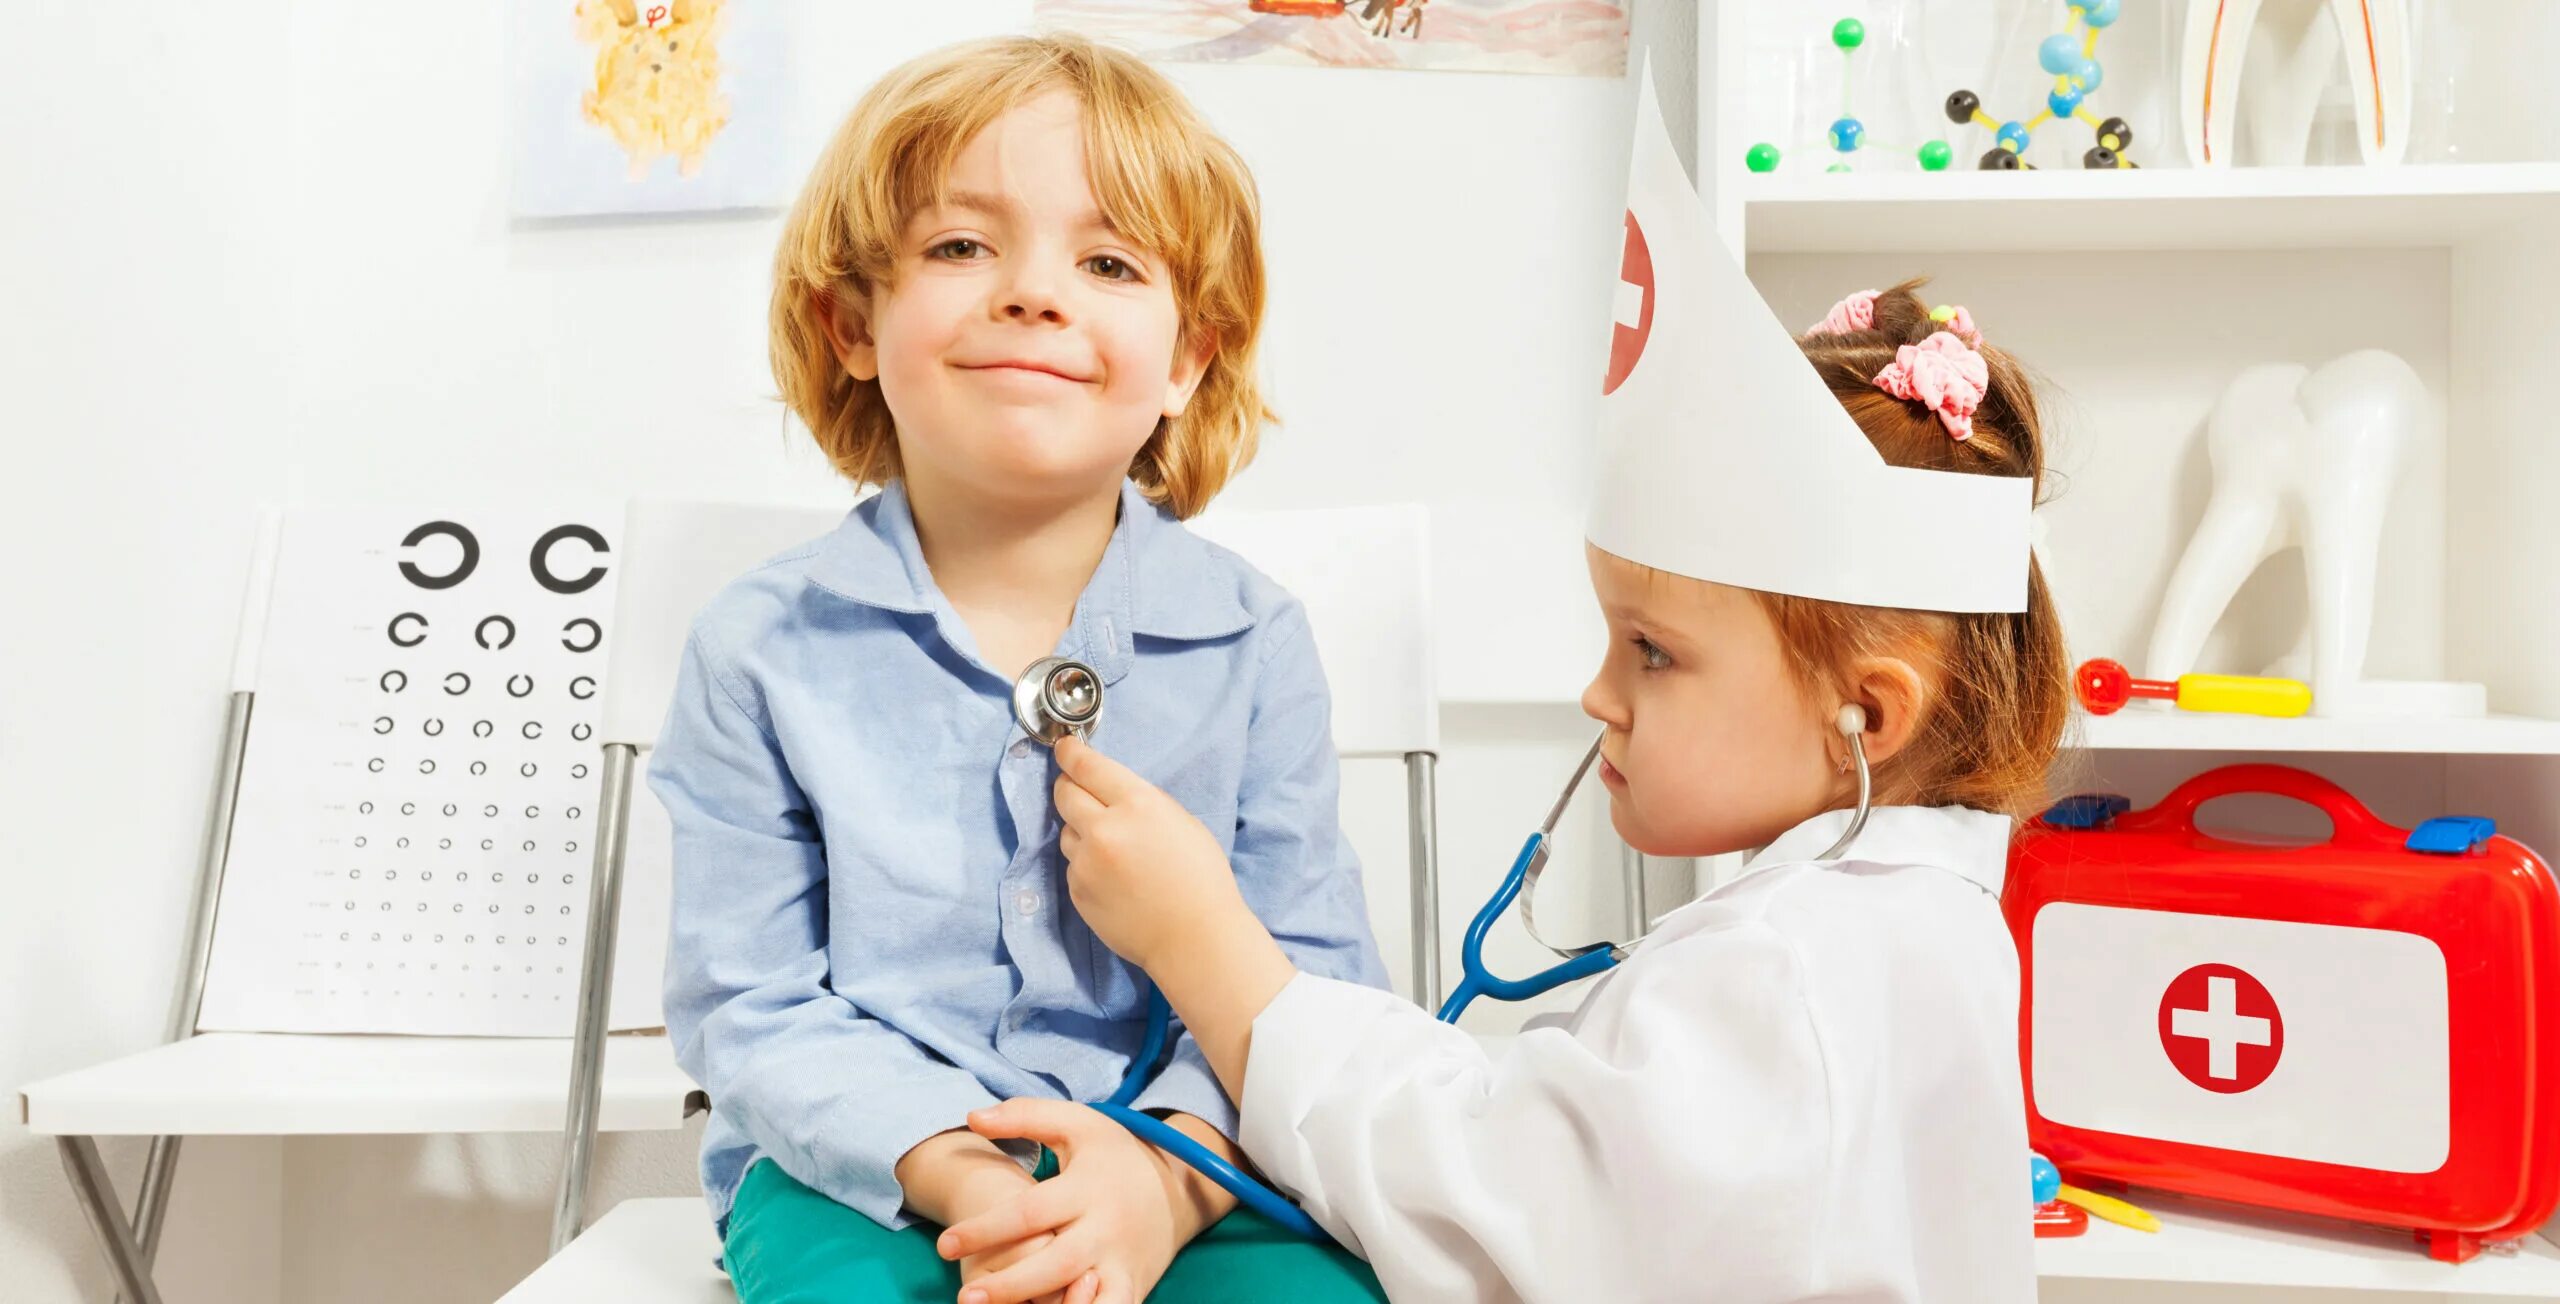 122 врач ребенку. Дети играют во врача. Ребенок, играющий в доктора. Дети играющие в доктора. Девочка играет в доктора.